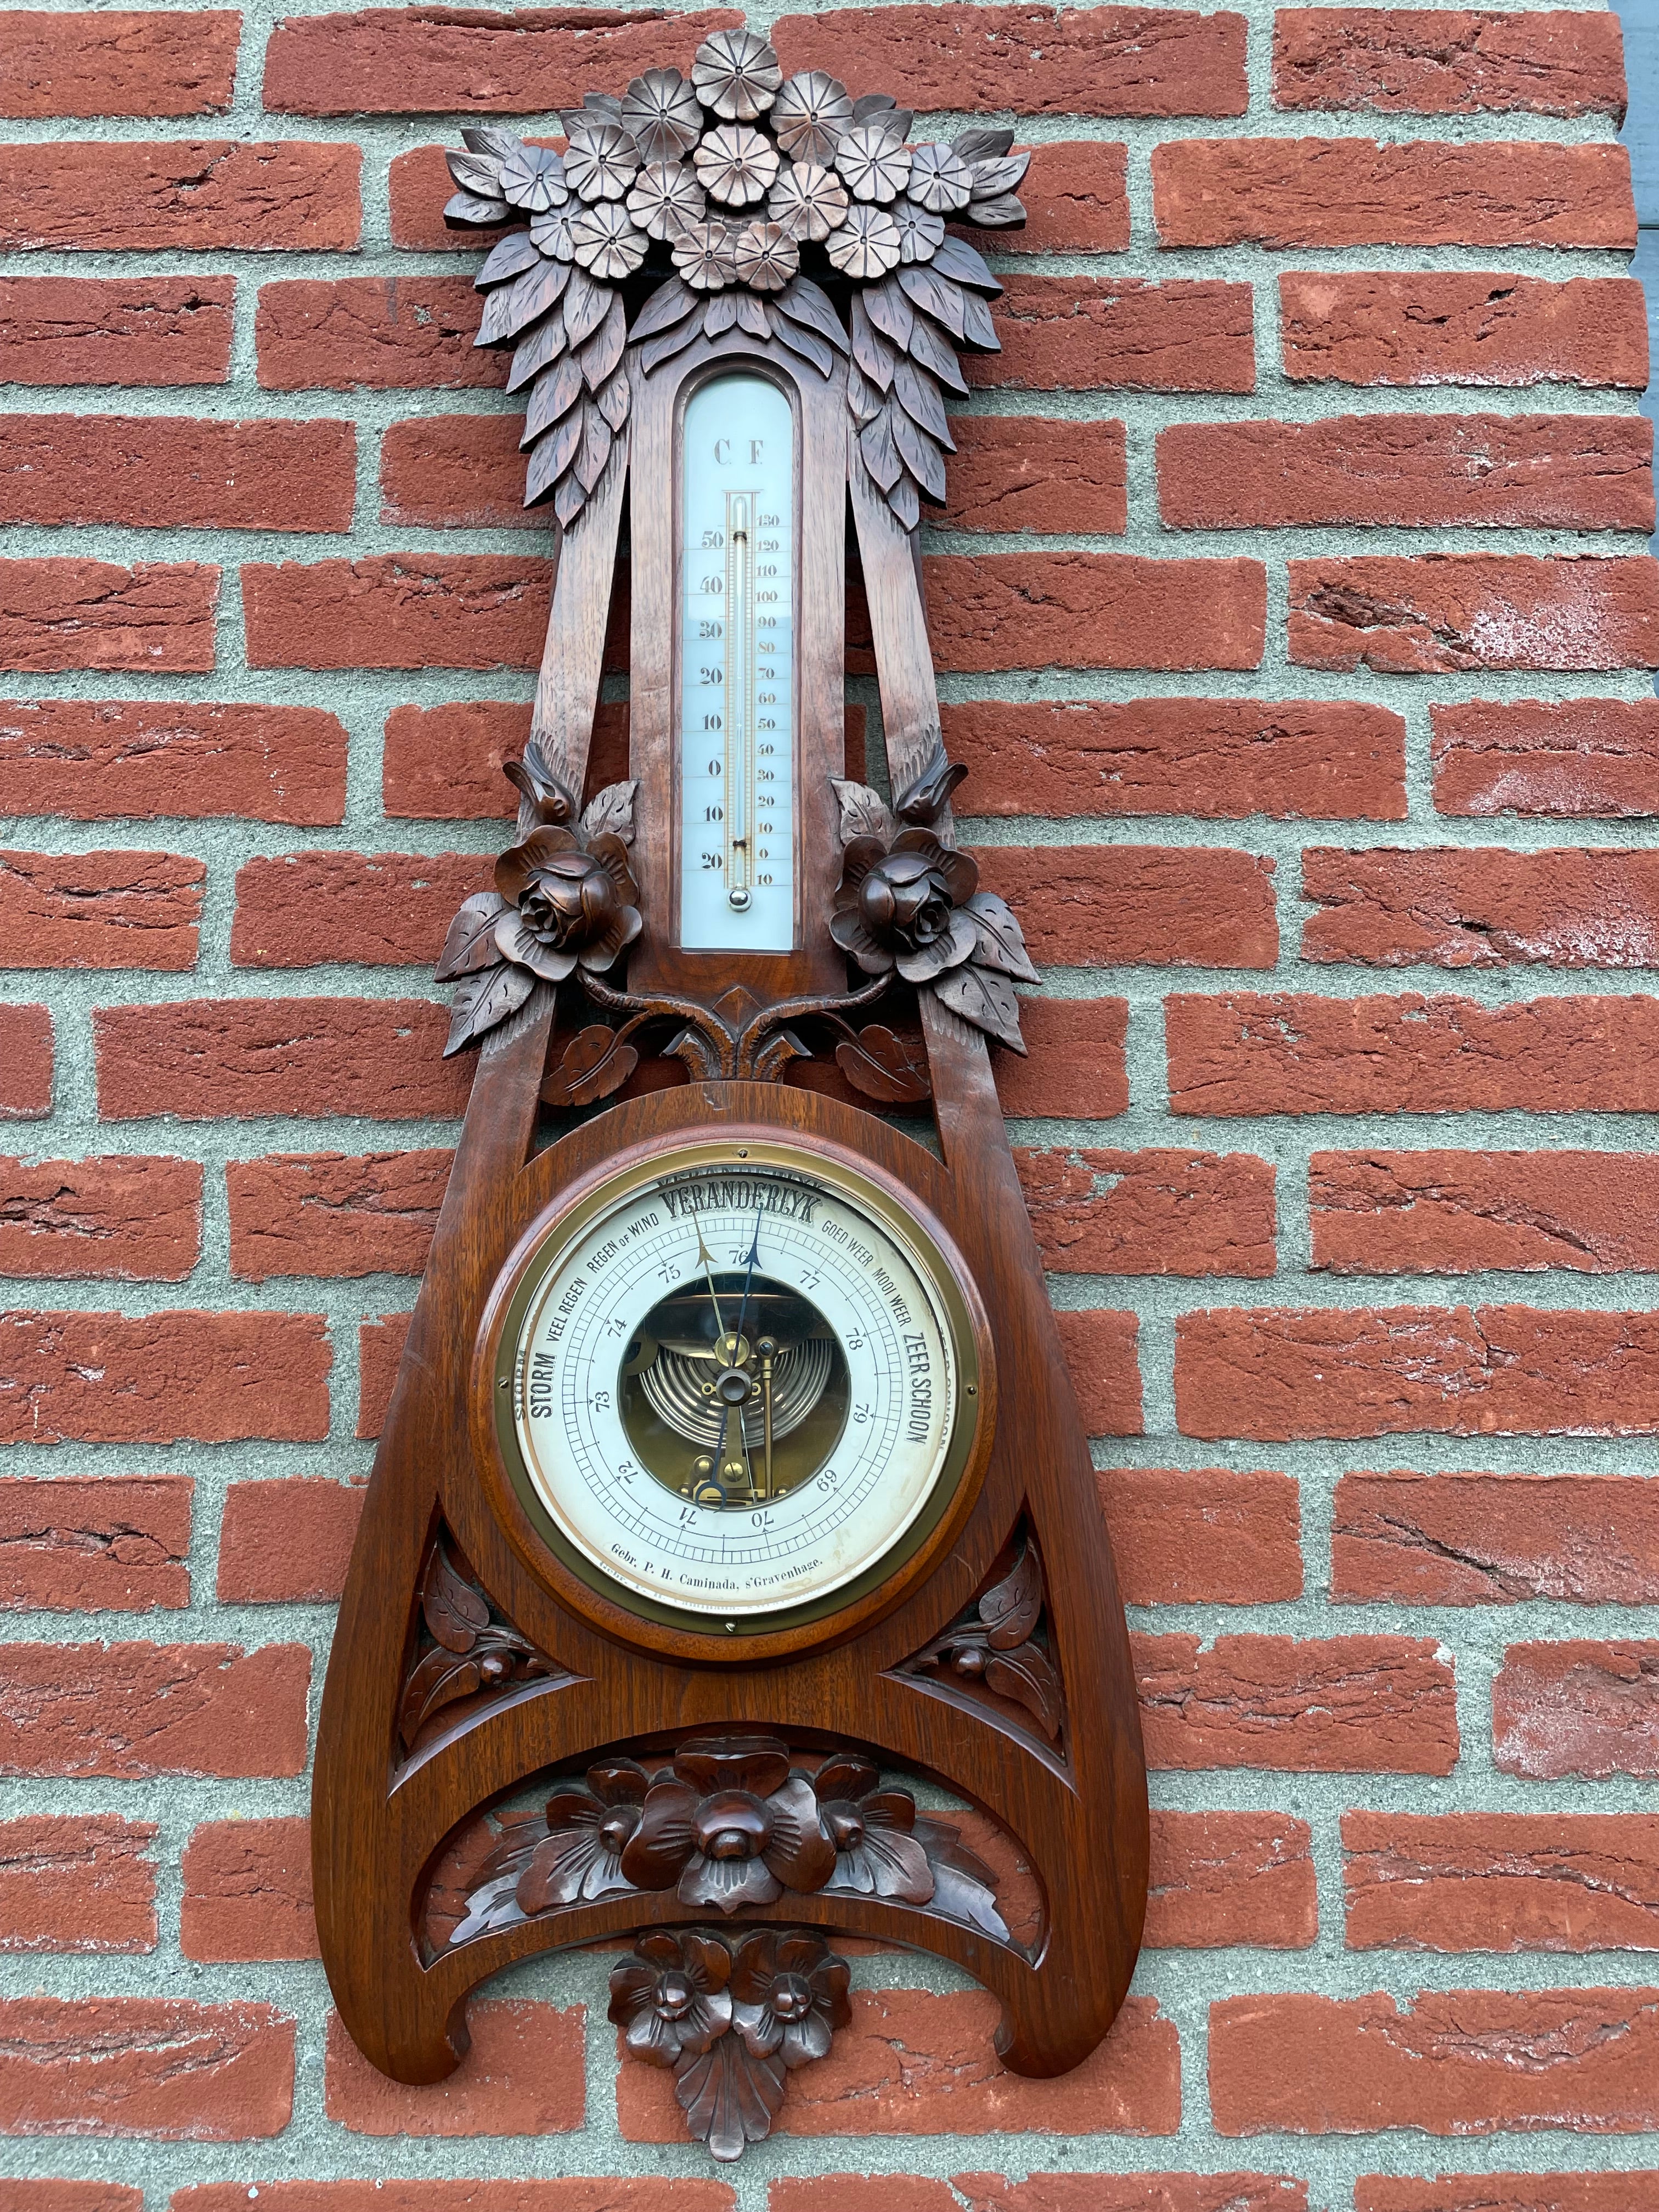 Wunderschönes Design und hochwertige Ausführung im Arts & Crafts-Stil.

Dieses aus einem Stück Nussbaumholz handgeschnitzte Wandbarometer aus der Zeit um 1900 hat alles, was eine Antiquität ausmacht. Die Qualität der Verarbeitung ist unübertroffen.